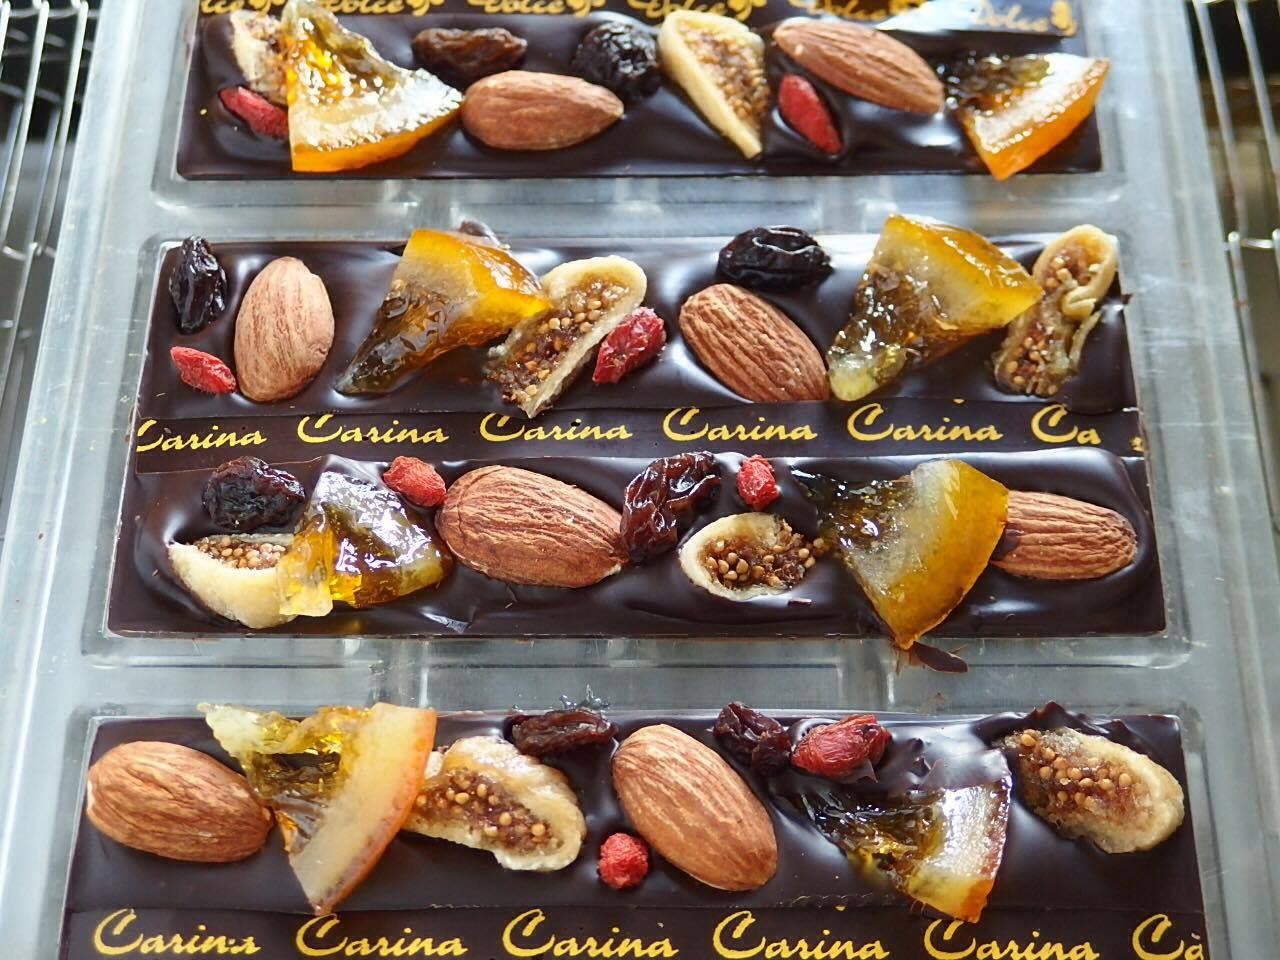 GLASS ONIONご近所の有名パティシエ「Dolce Carina」さんの美味しいチョコレートを販売!_b0125570_16484280.jpg